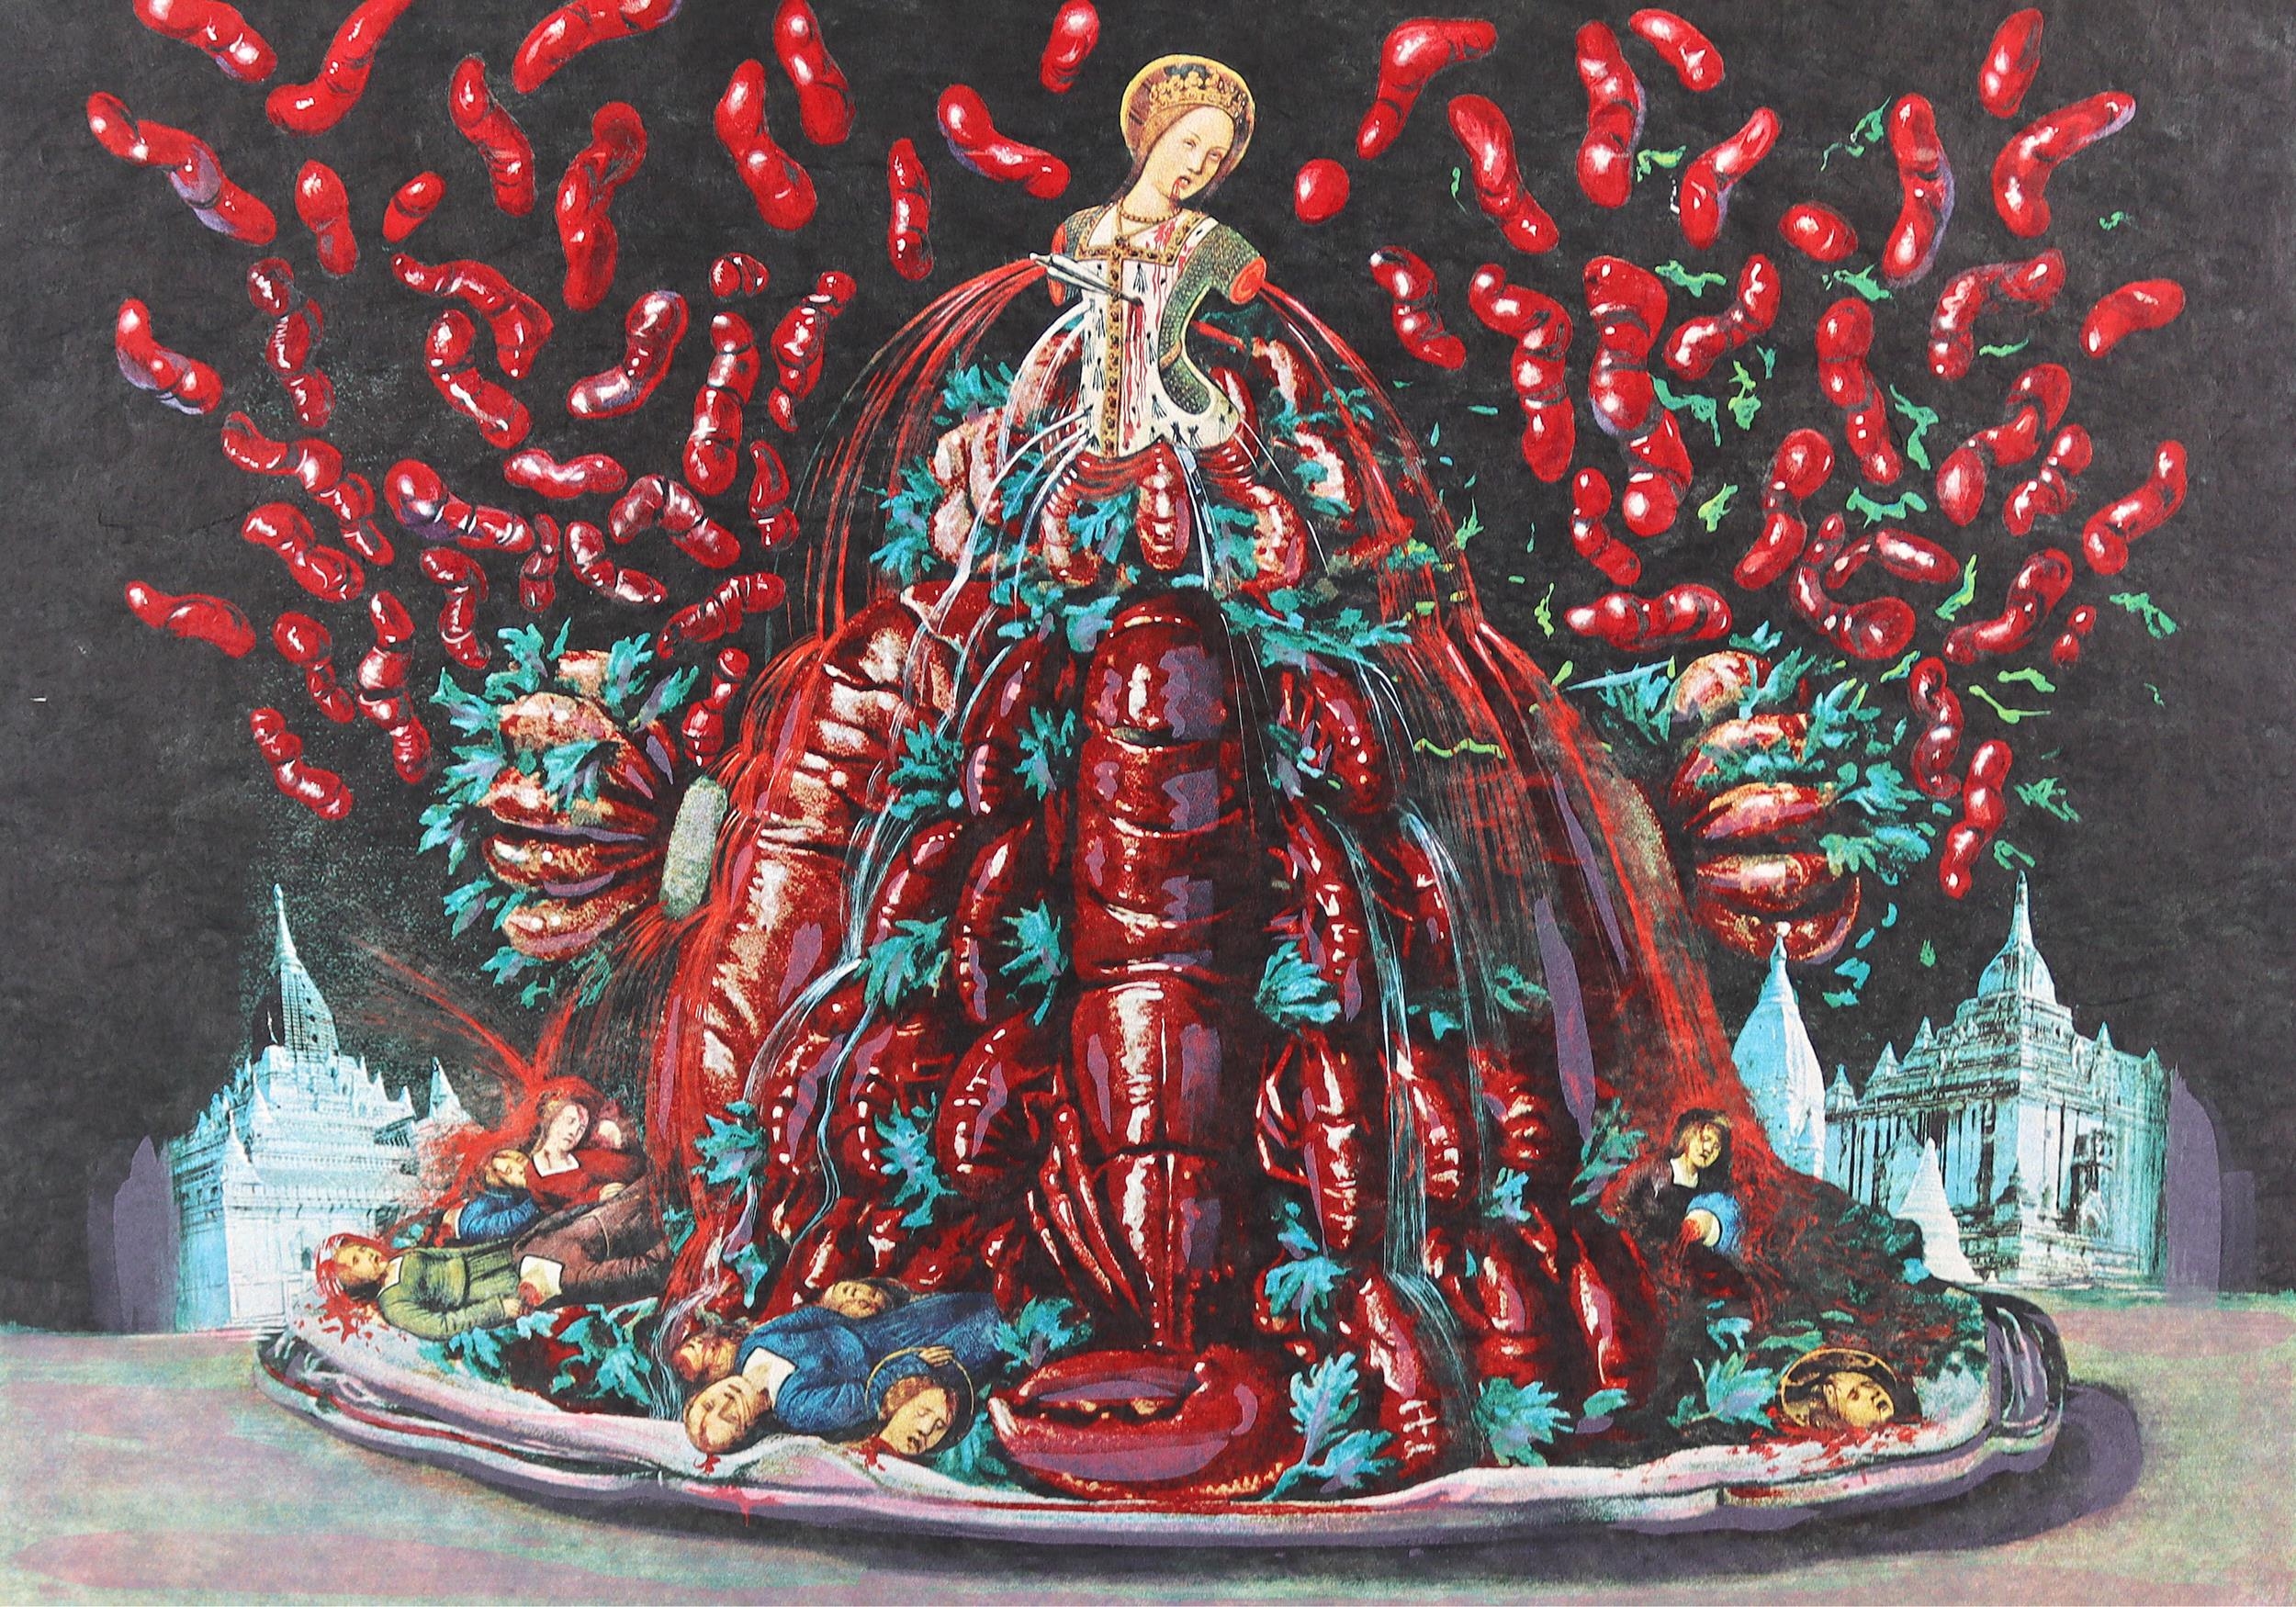 Les Diners de Gala: Les Cannibalismes de l'automne by Salvador Dalí, 1971